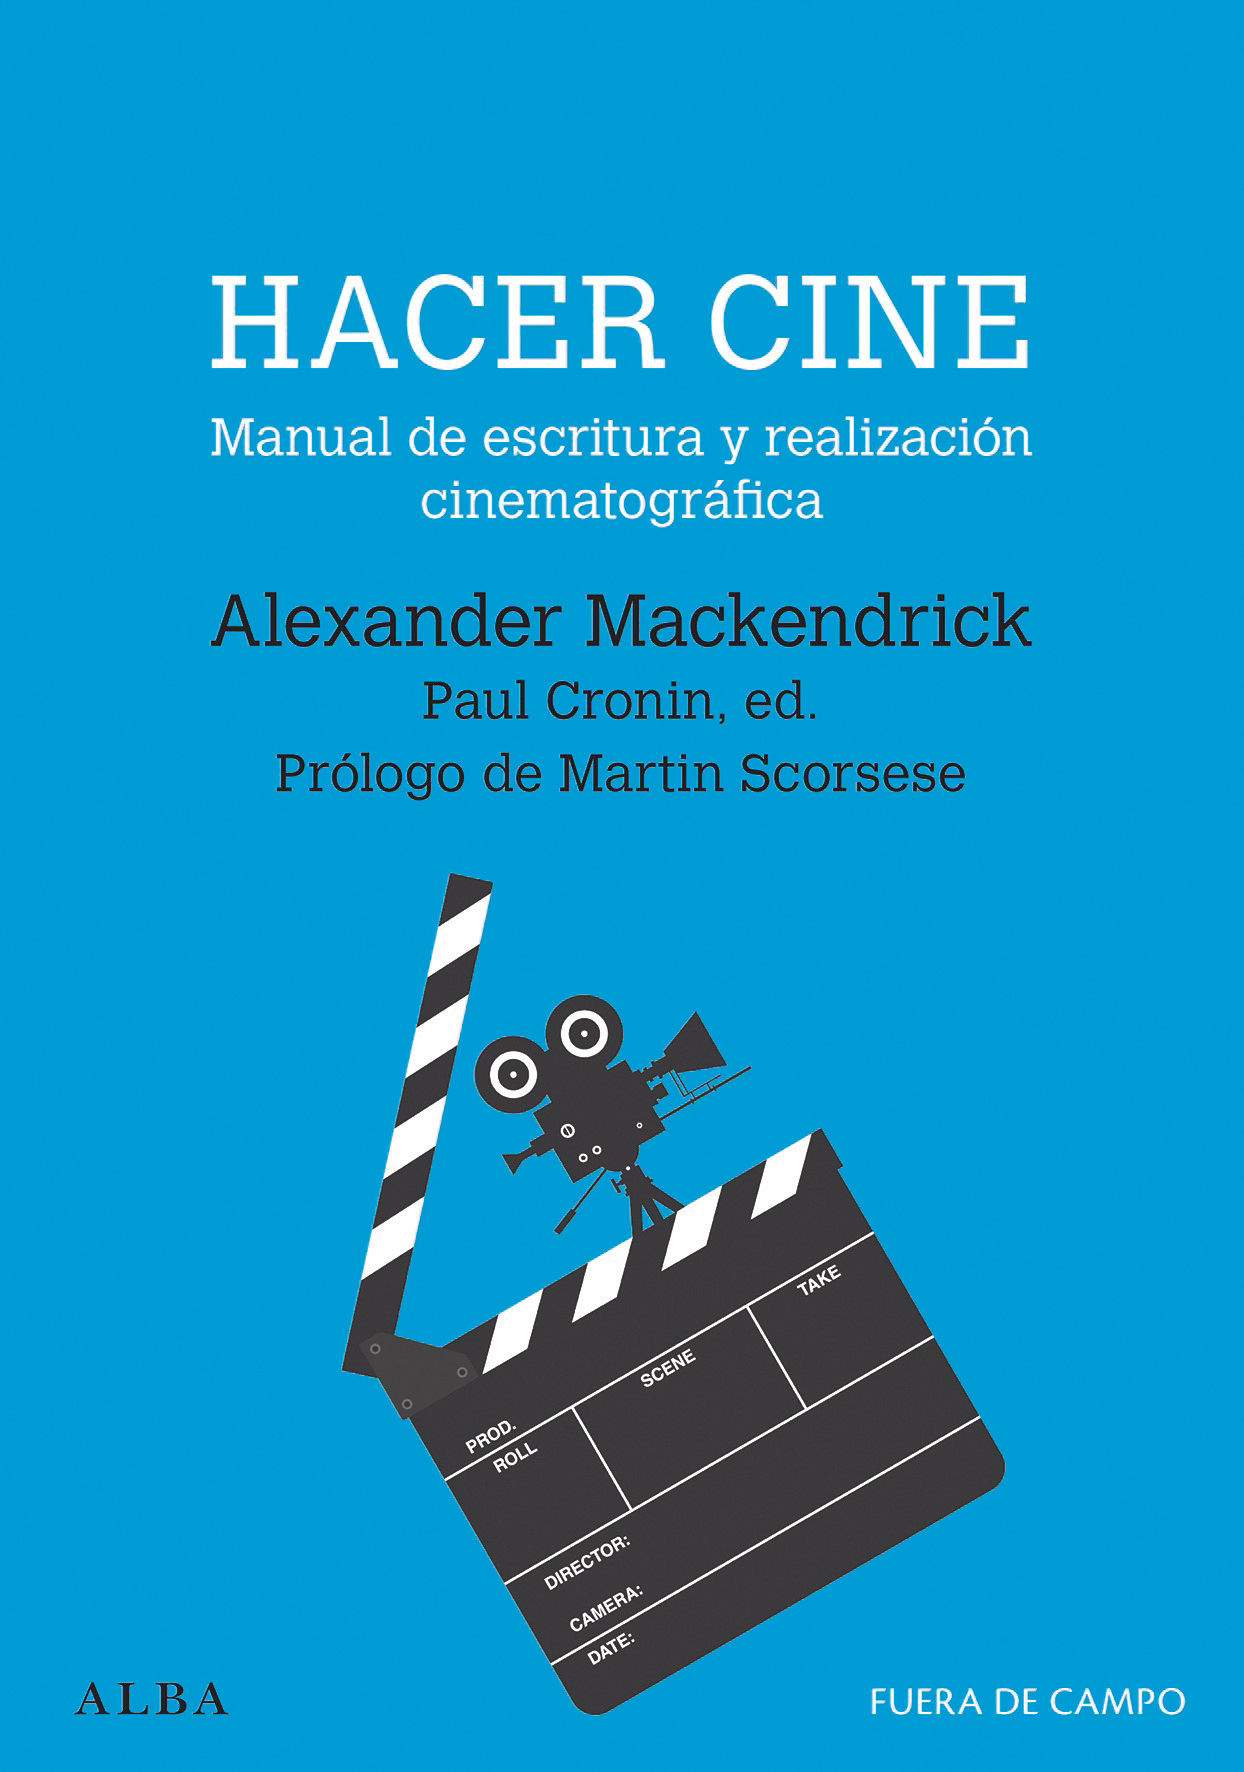 HACER CINE. MANUAL DE ESCRITURA Y REALIZACIÓN CINEMATOGRÁFICA